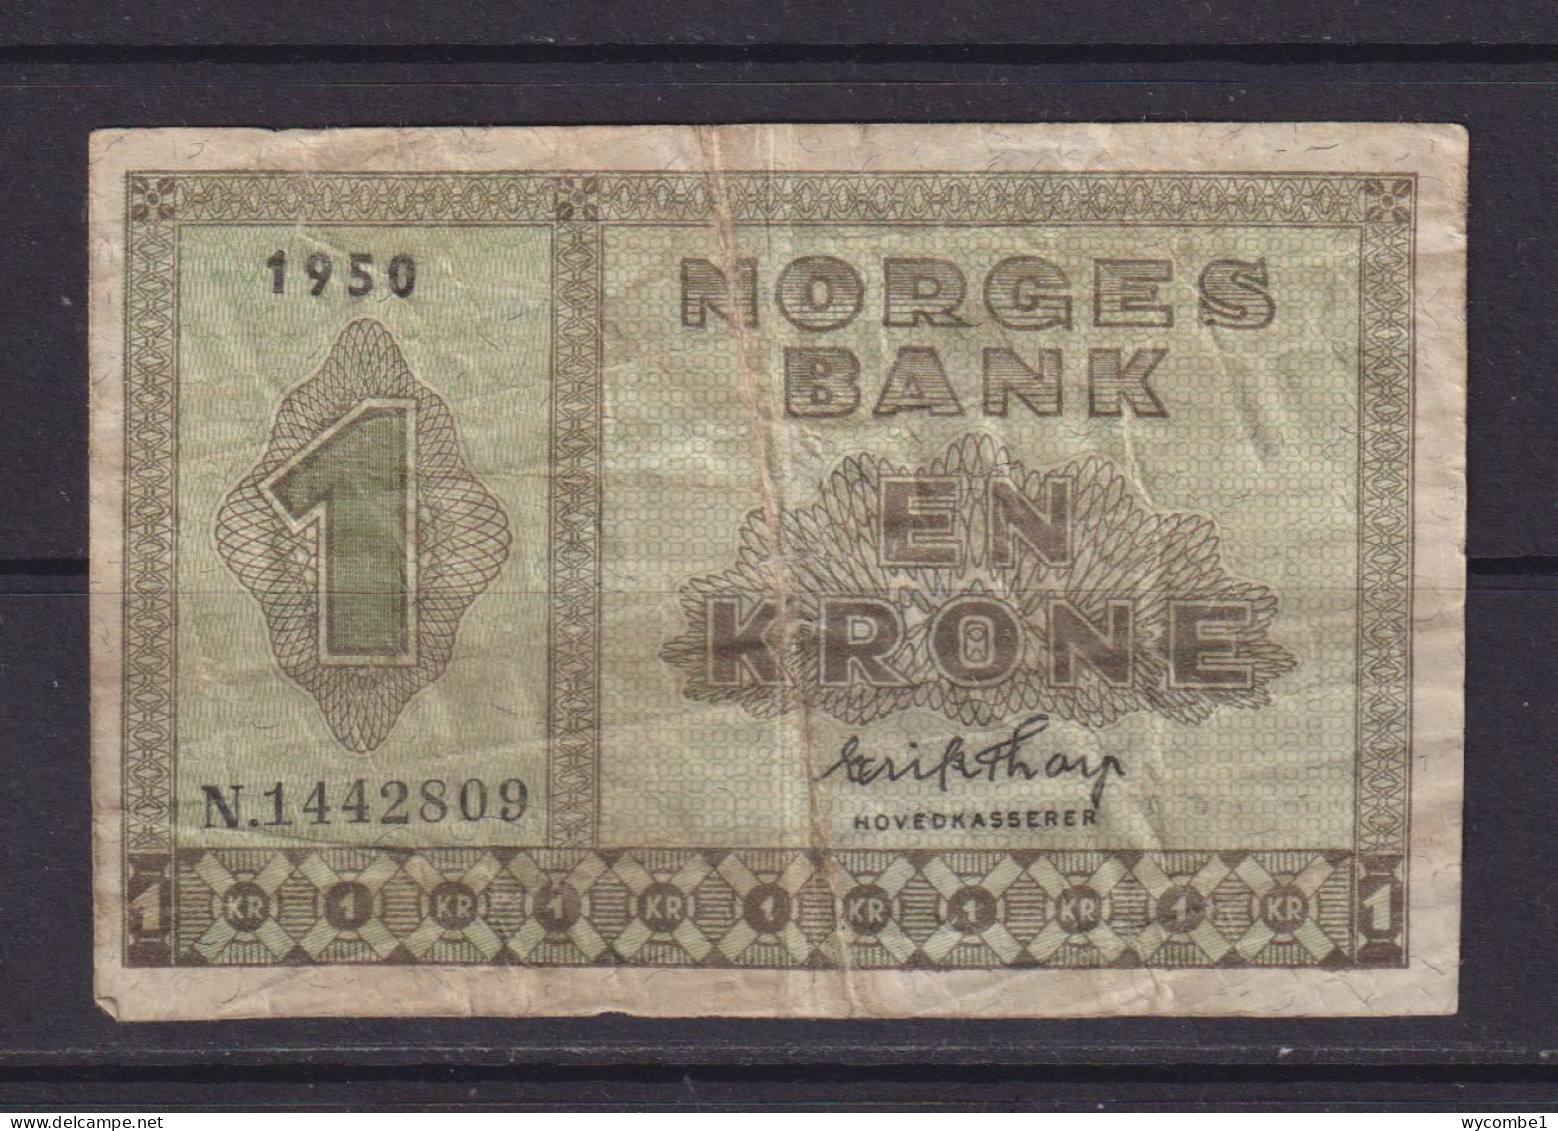 NORWAY - 1950 1 Krone Circulated Banknote - Norway